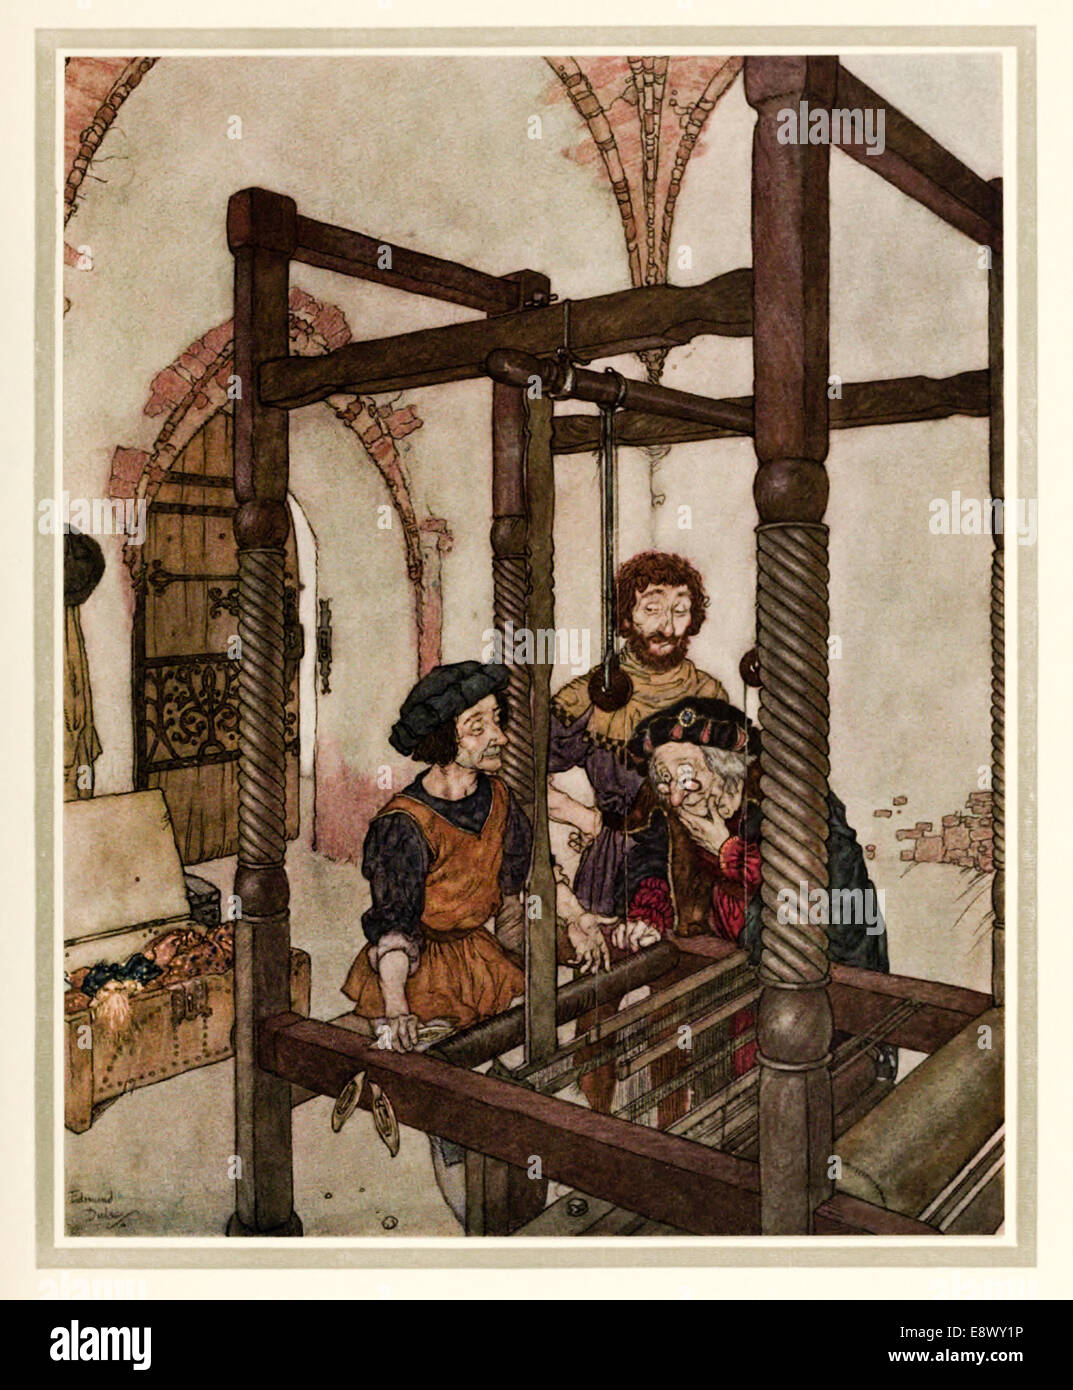 Des Kaisers neue Kleider - Edmund Dulac Illustration aus "Geschichten von Hans Andersen". Siehe Beschreibung für mehr Informationen. Stockfoto